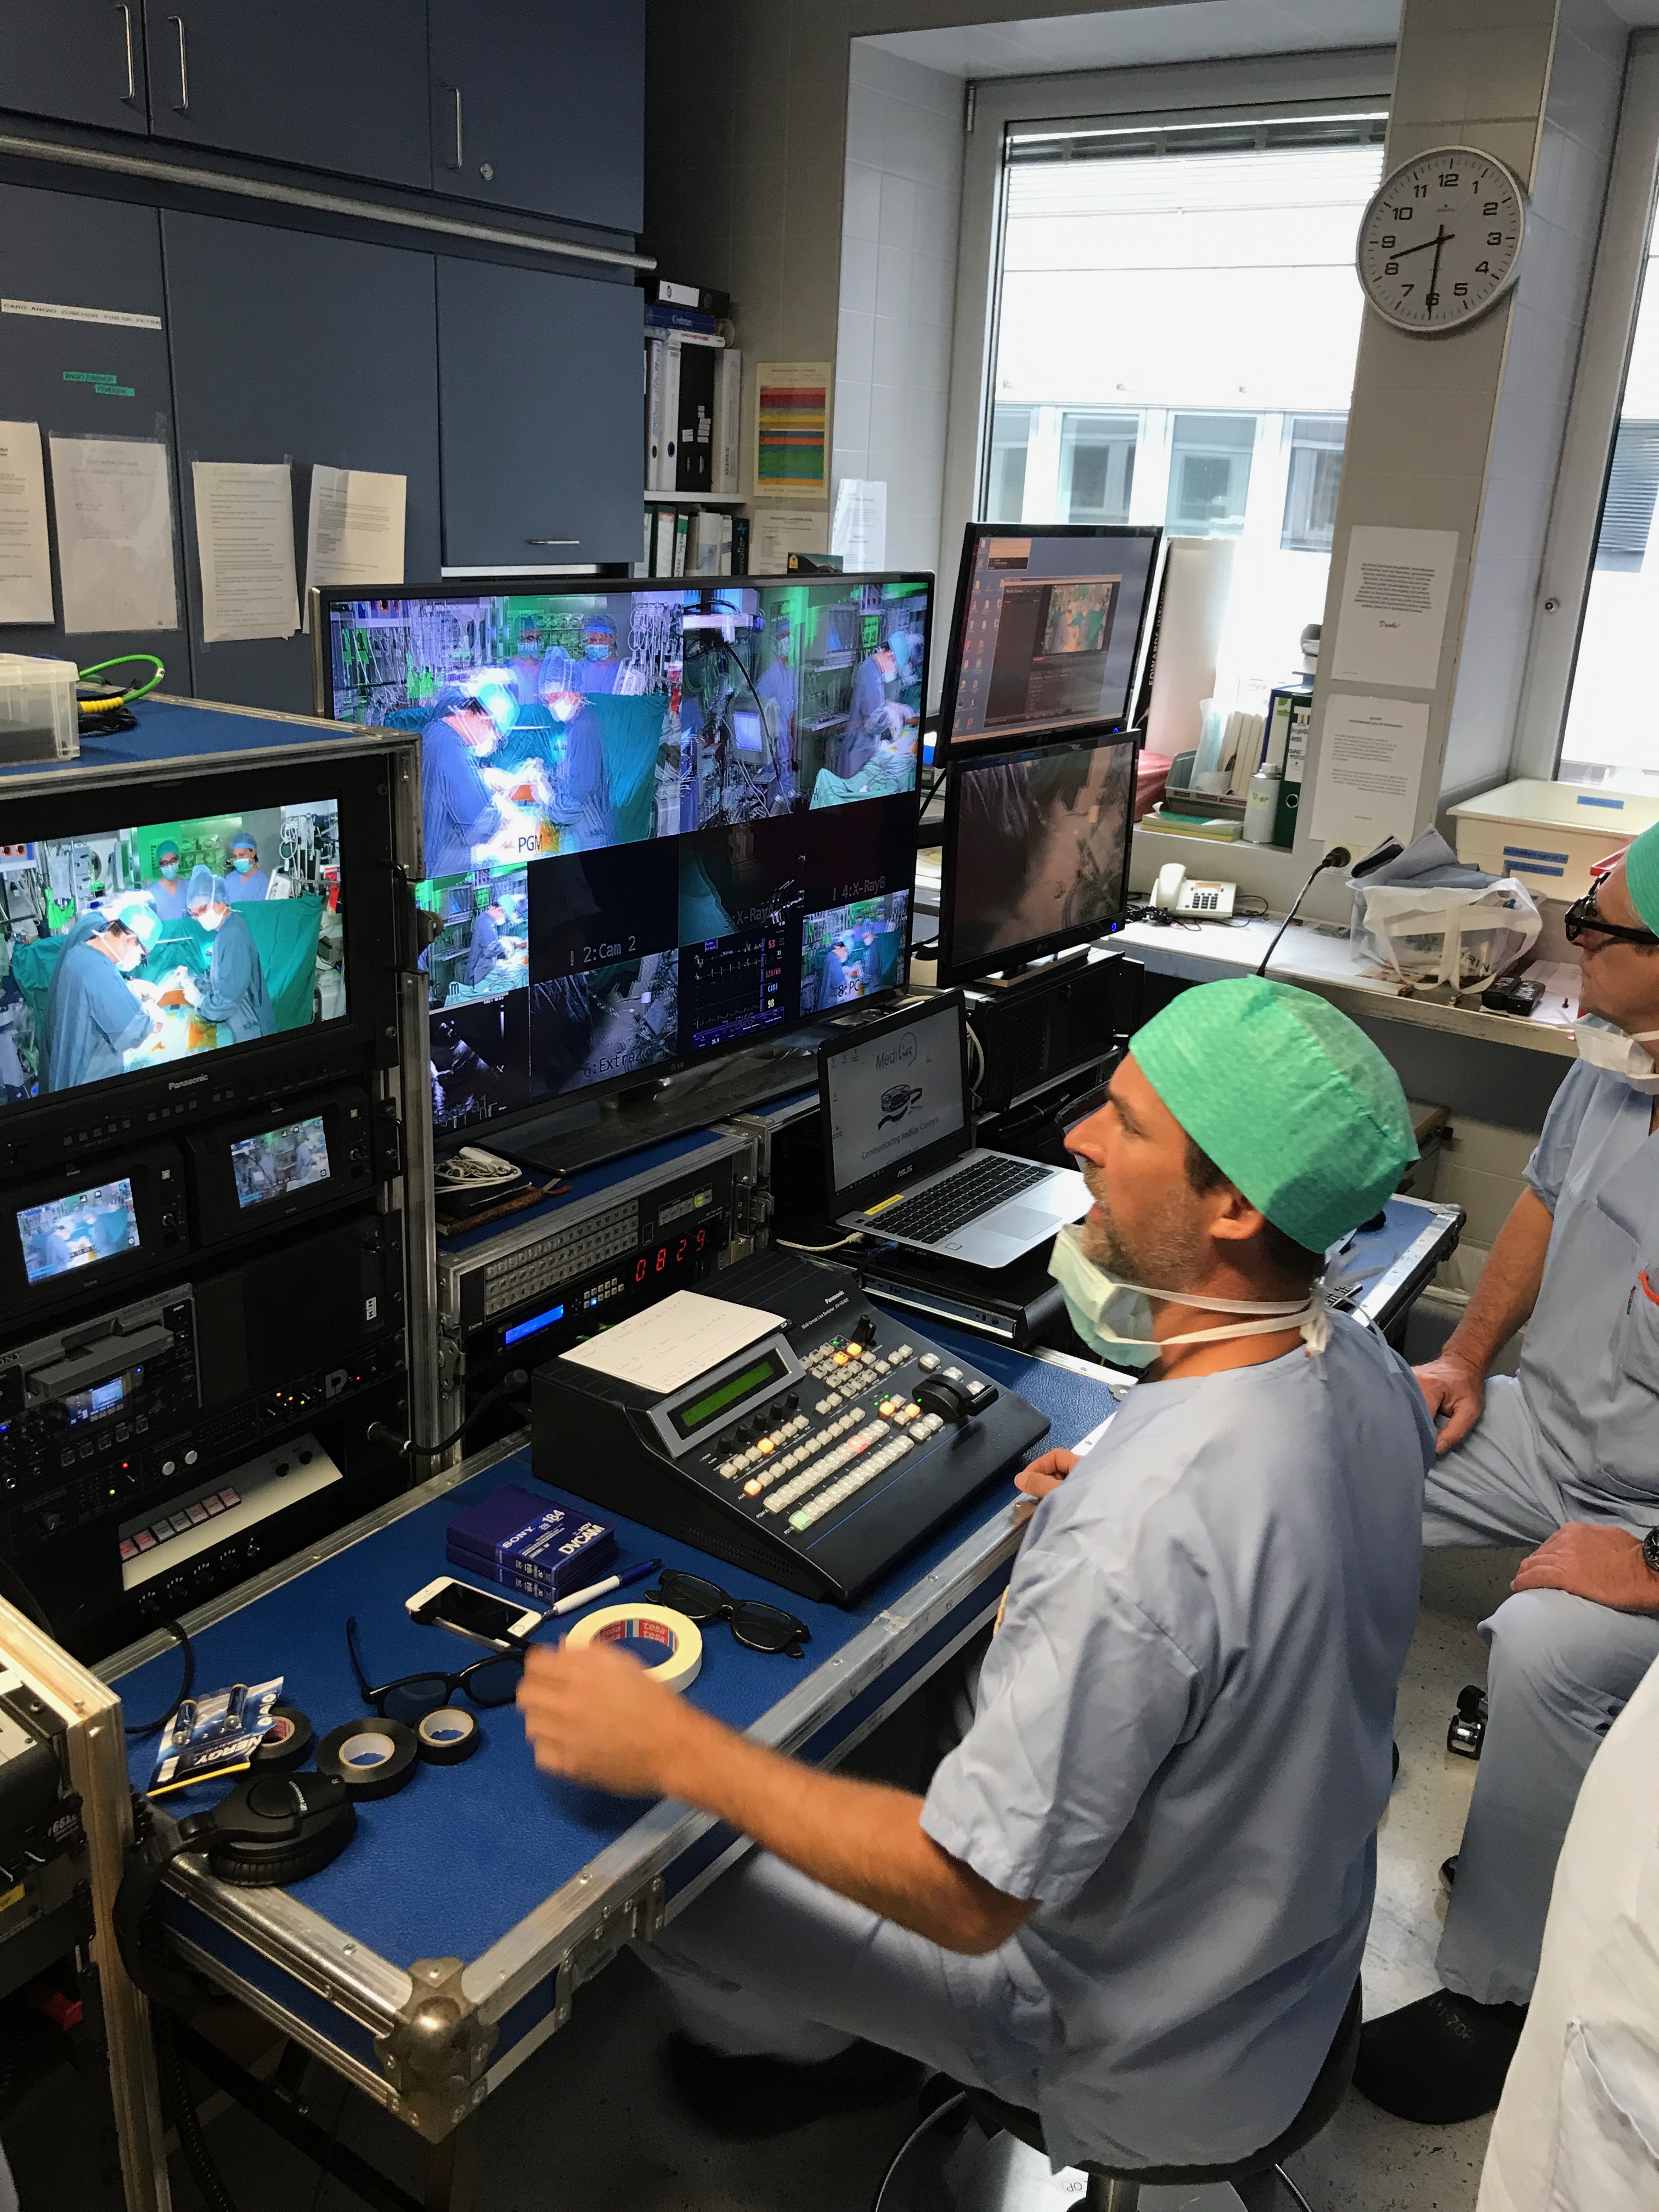 Meistarklašu operācijas veic pazīstamākie Eiropas sirds ķirurgi  no Vācijas, Šveices, Austrijas,  Itālijas u.c., operāciju zālēs tiešraidē  filmē profesionālu operatoru komanda un pārraida uz konferenču zāli,  kur to 3D brillēs skatās dalībnieki. Paralēli